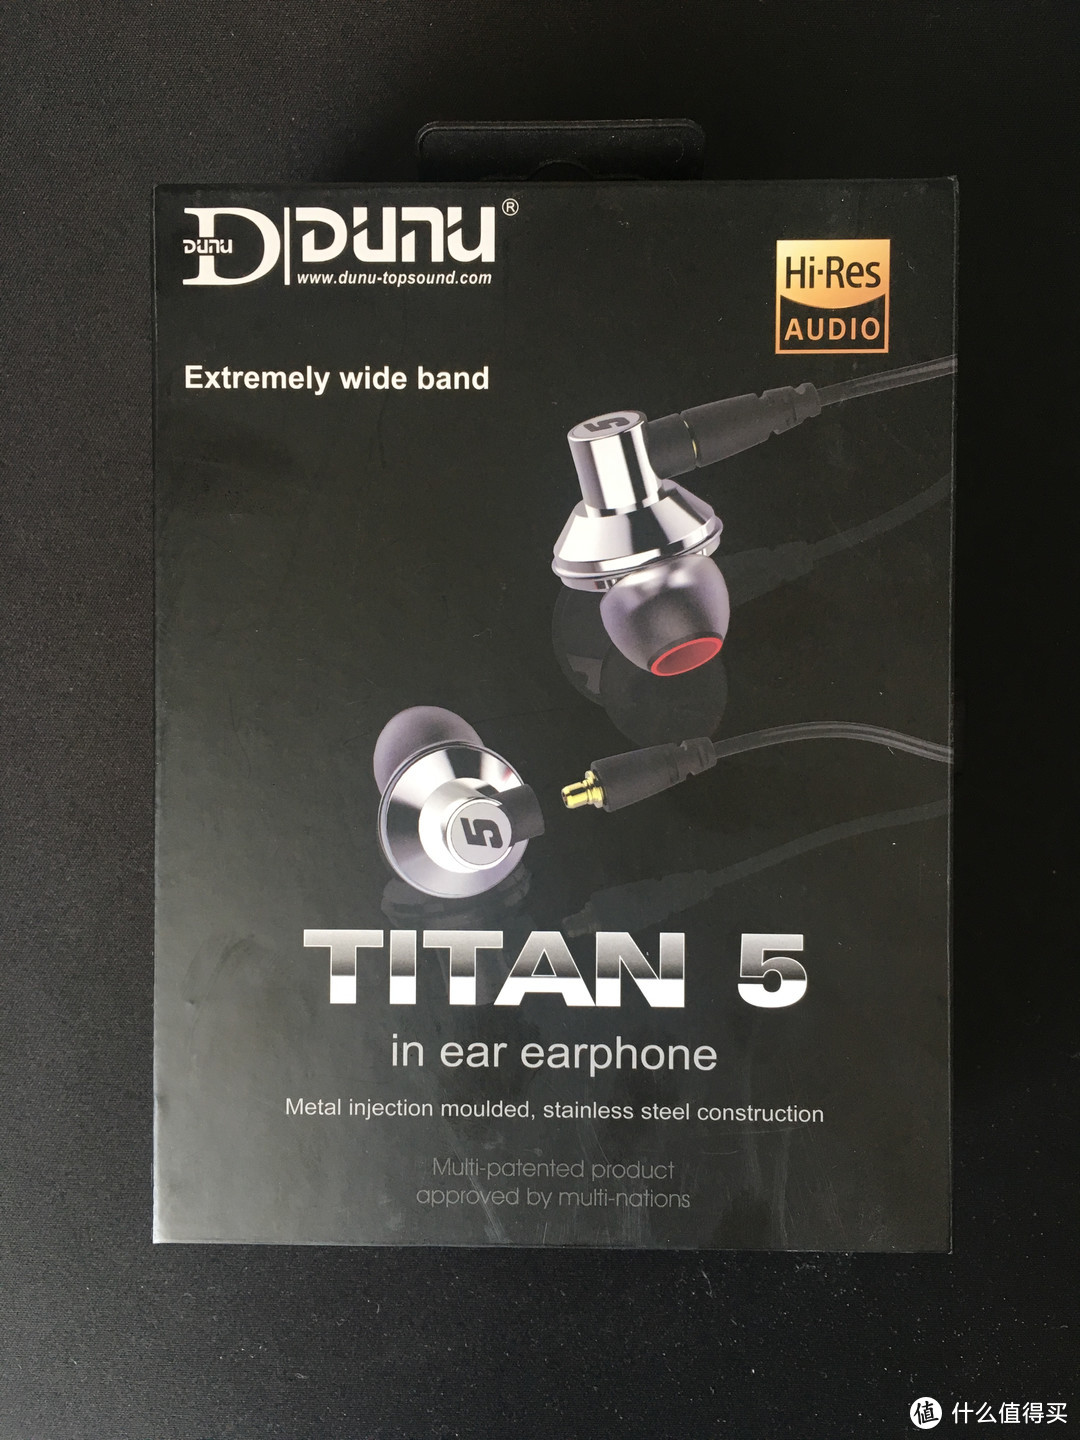 国货强塞—DUNU 达音科 Titan5 耳机试听随感